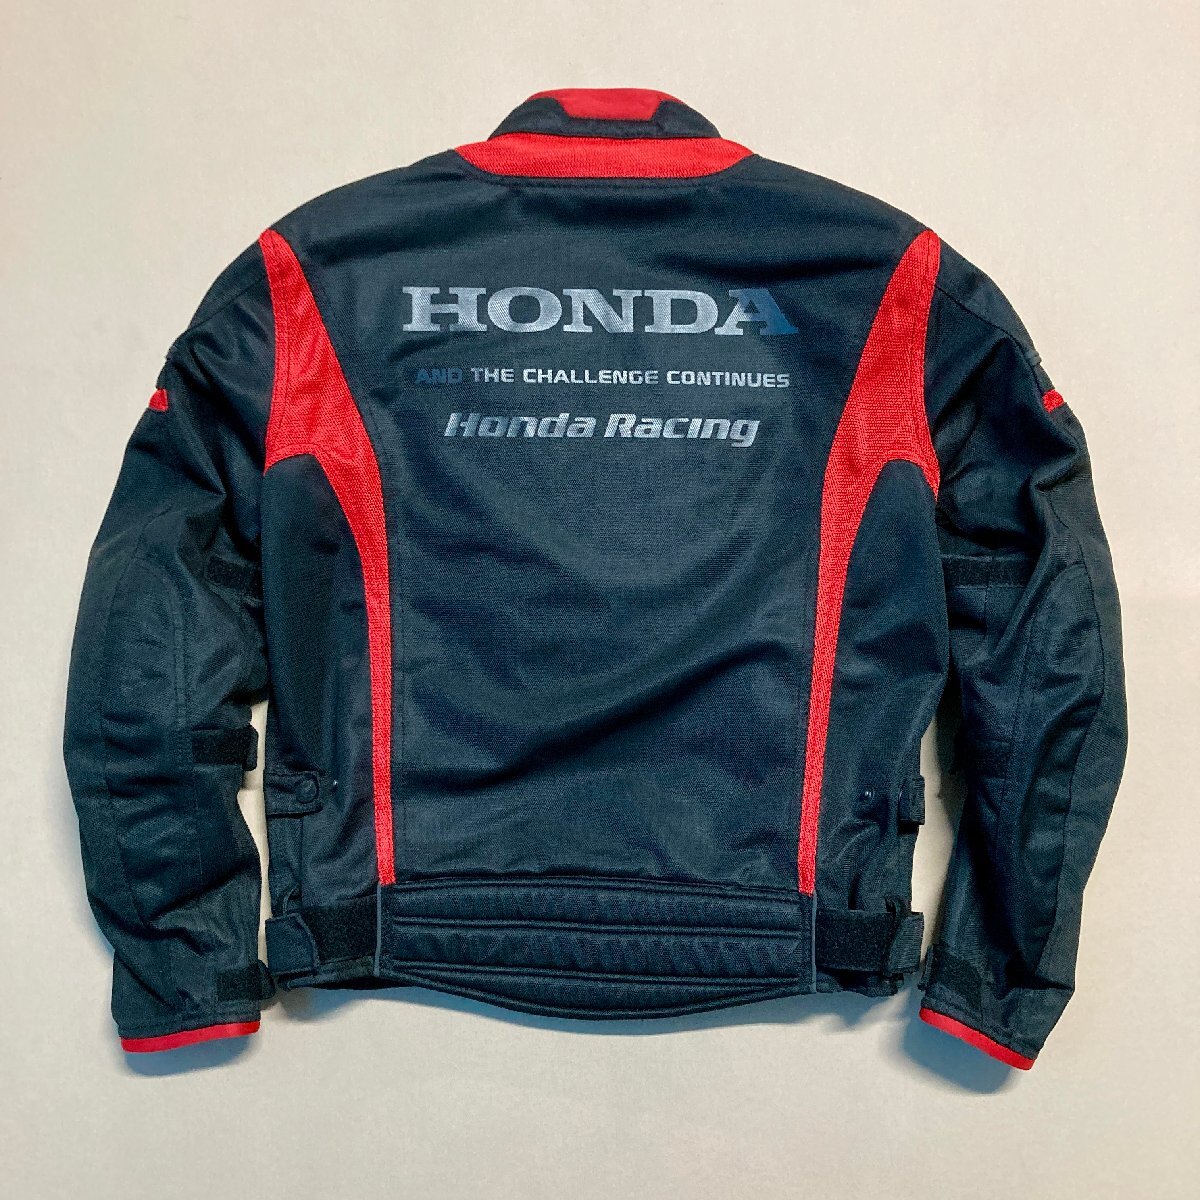 ★HONDA Racing Jacket ホンダ レーシング ライディング ジャケット M ブラック レッド バイク ツーリング 肩肘背プロテクタ 1.05kg★_画像2